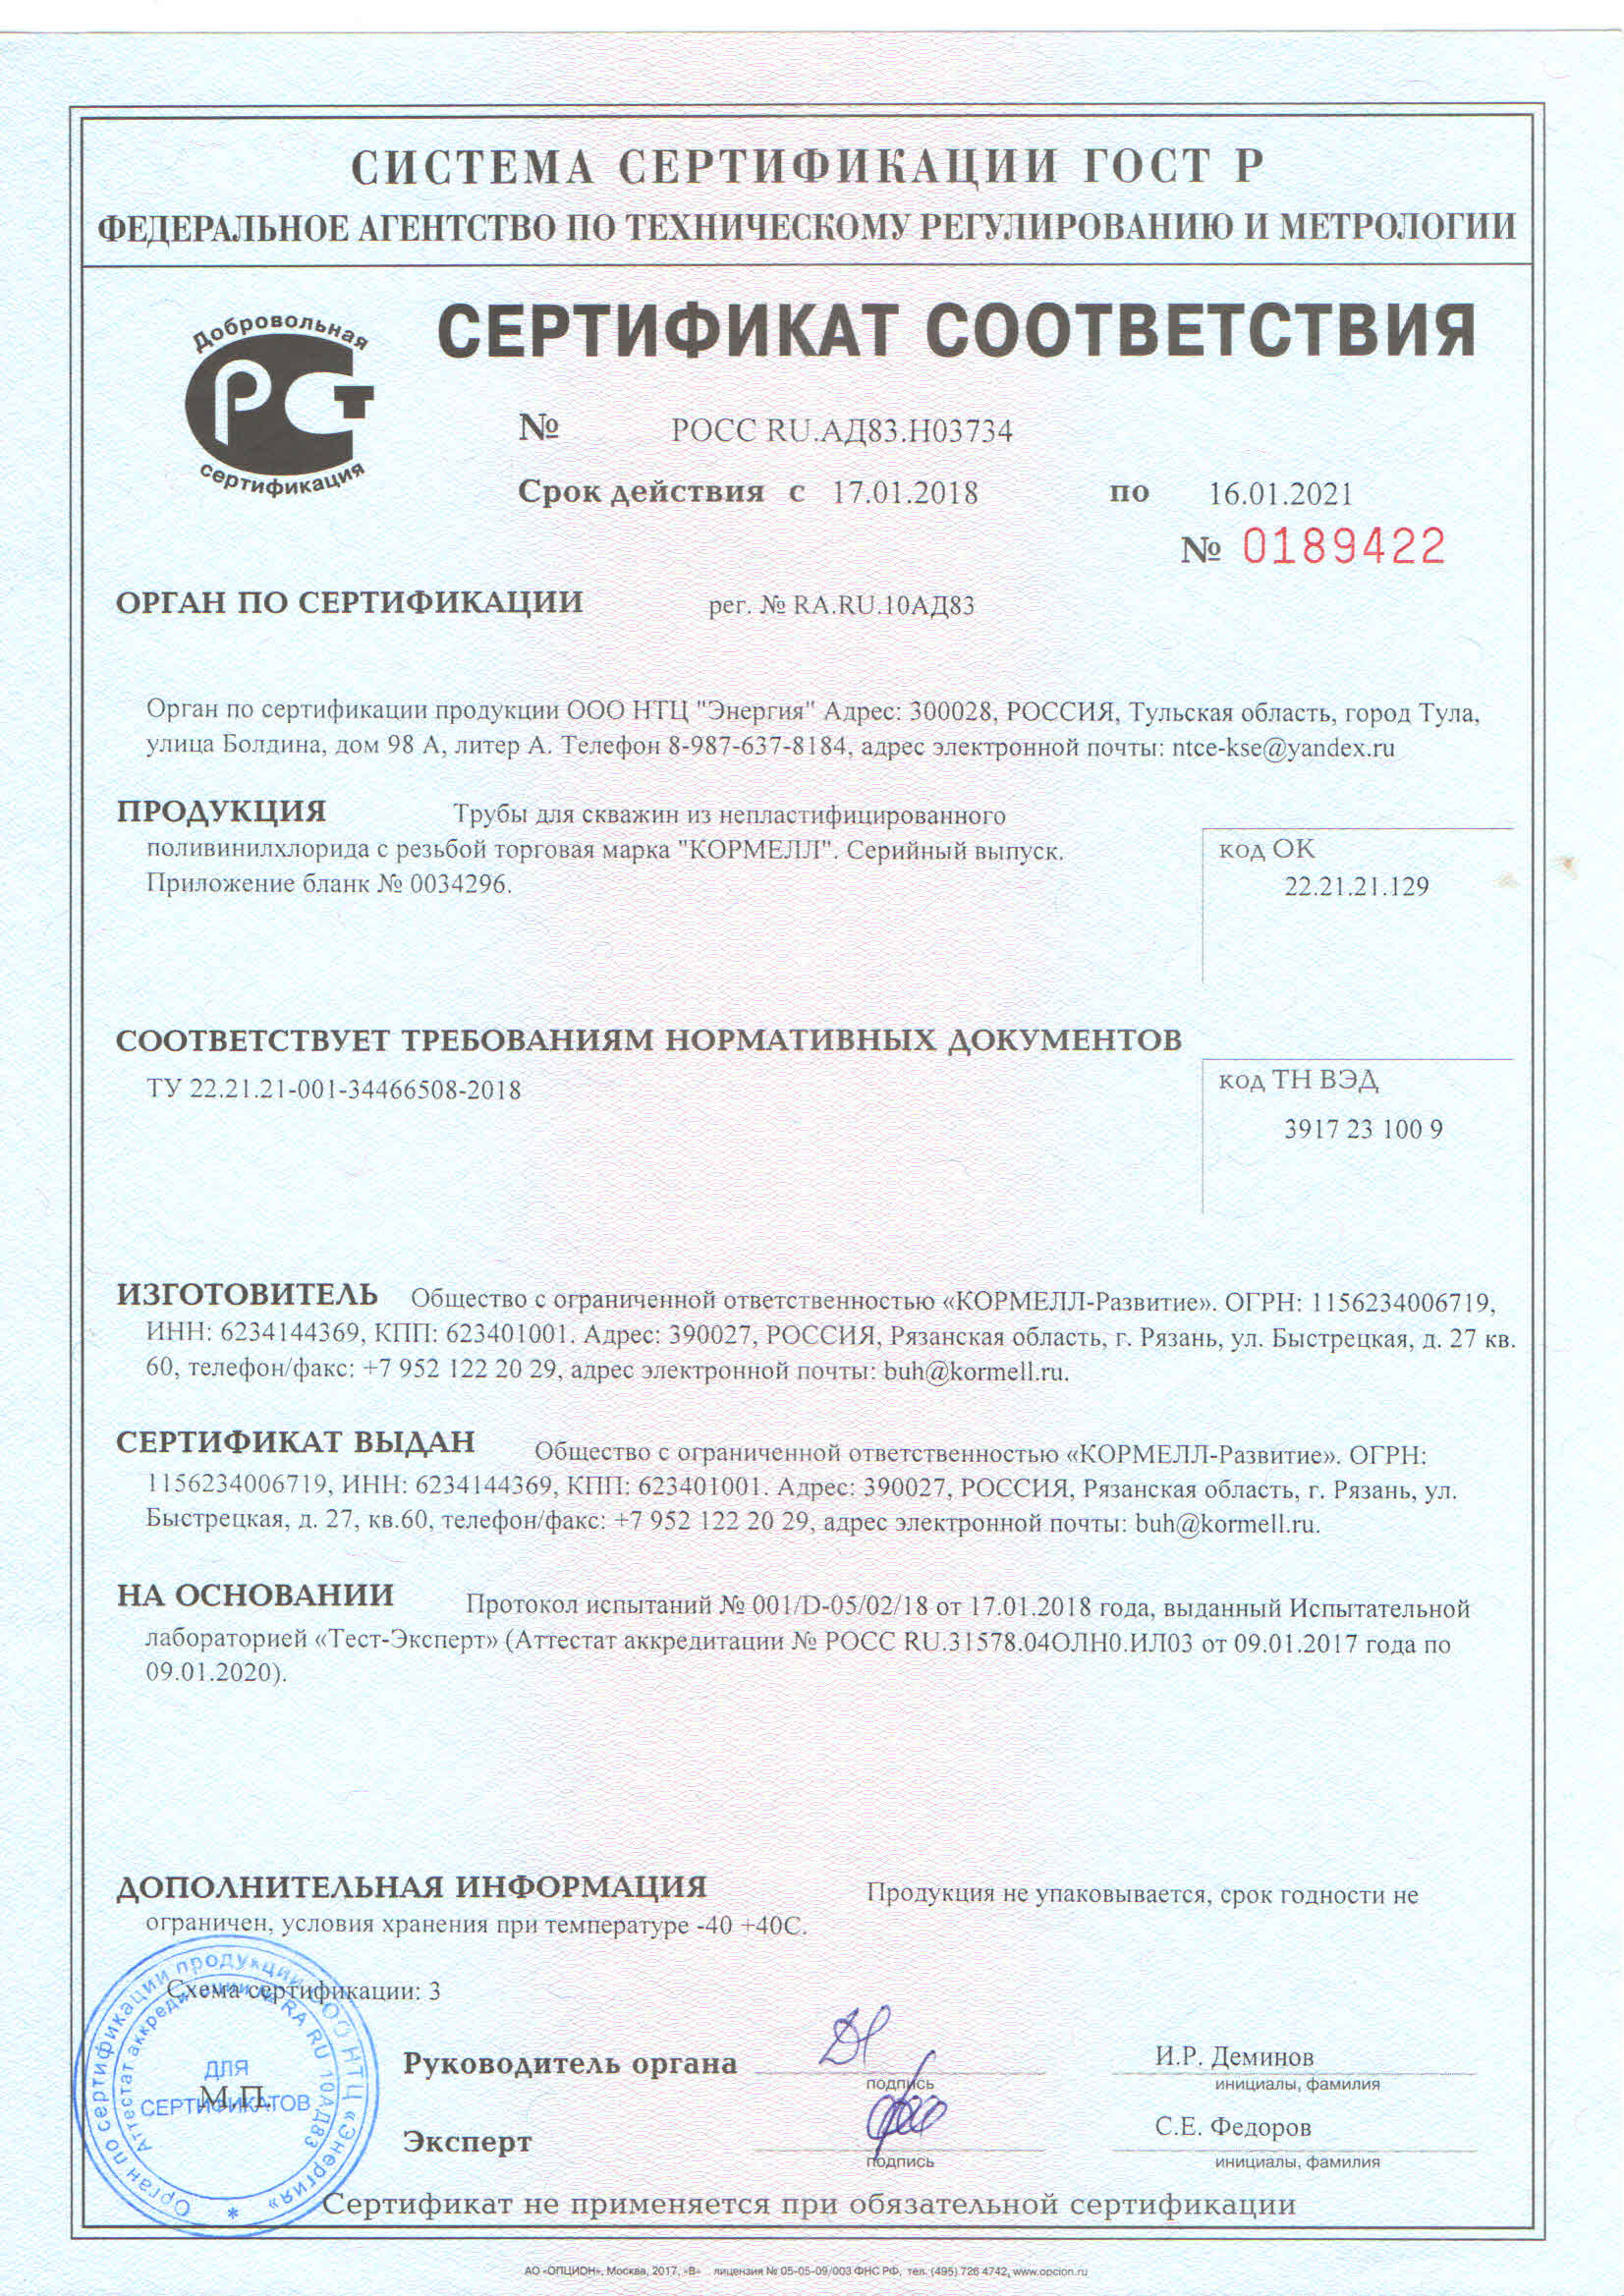 Сертификат соответствия ТУ 22.21.21-001-34466508-2018